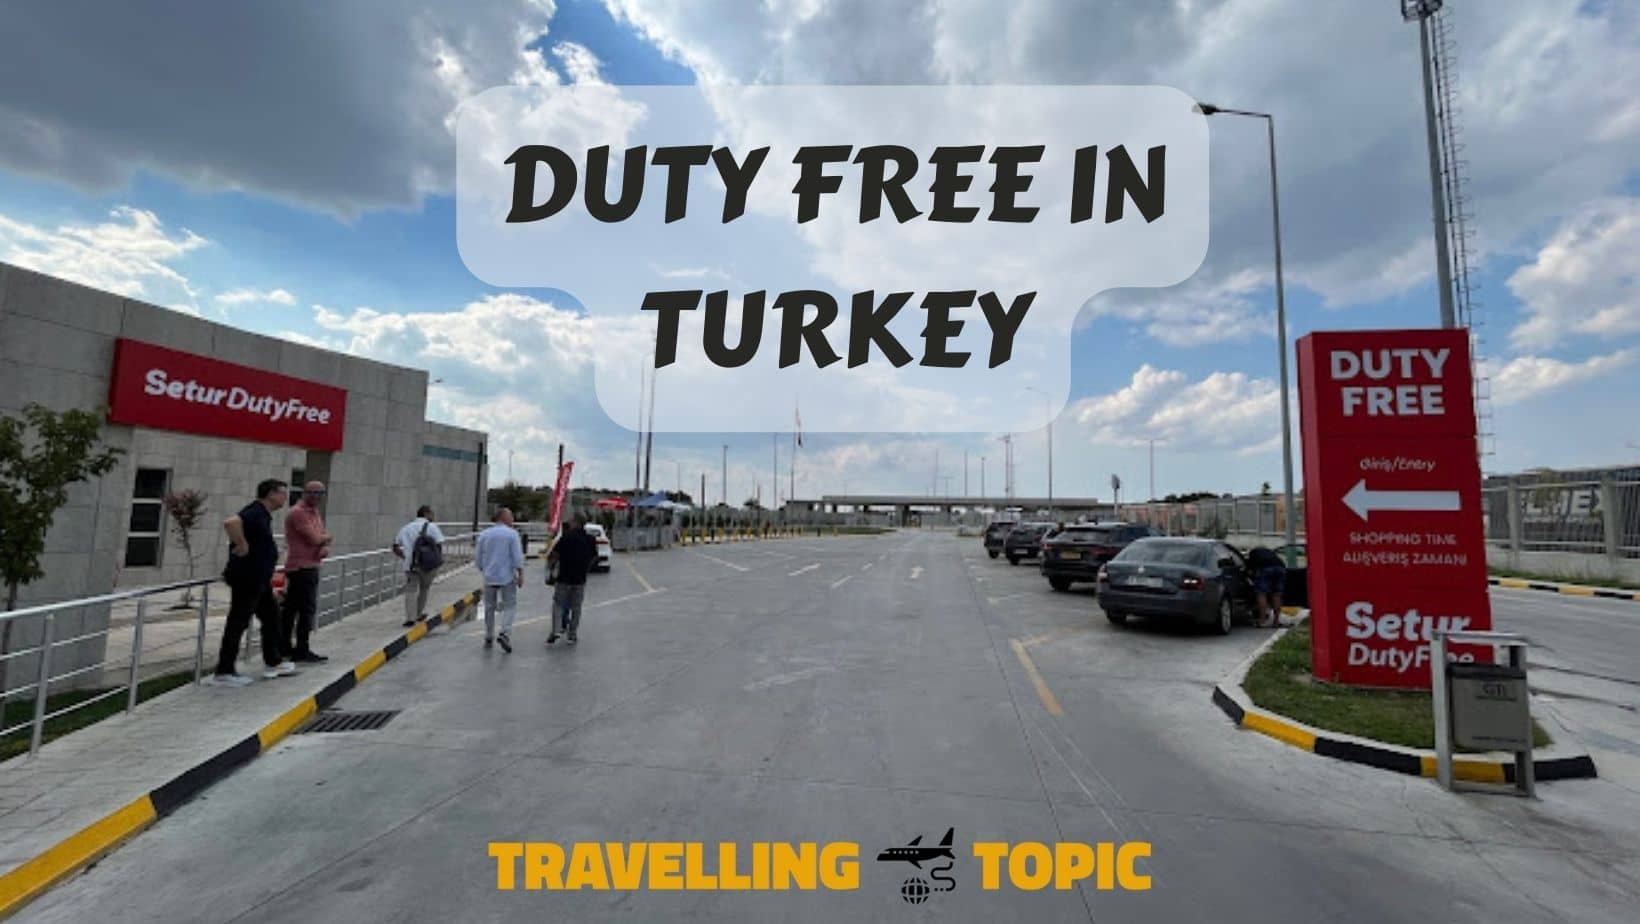 Duty free in Turkey